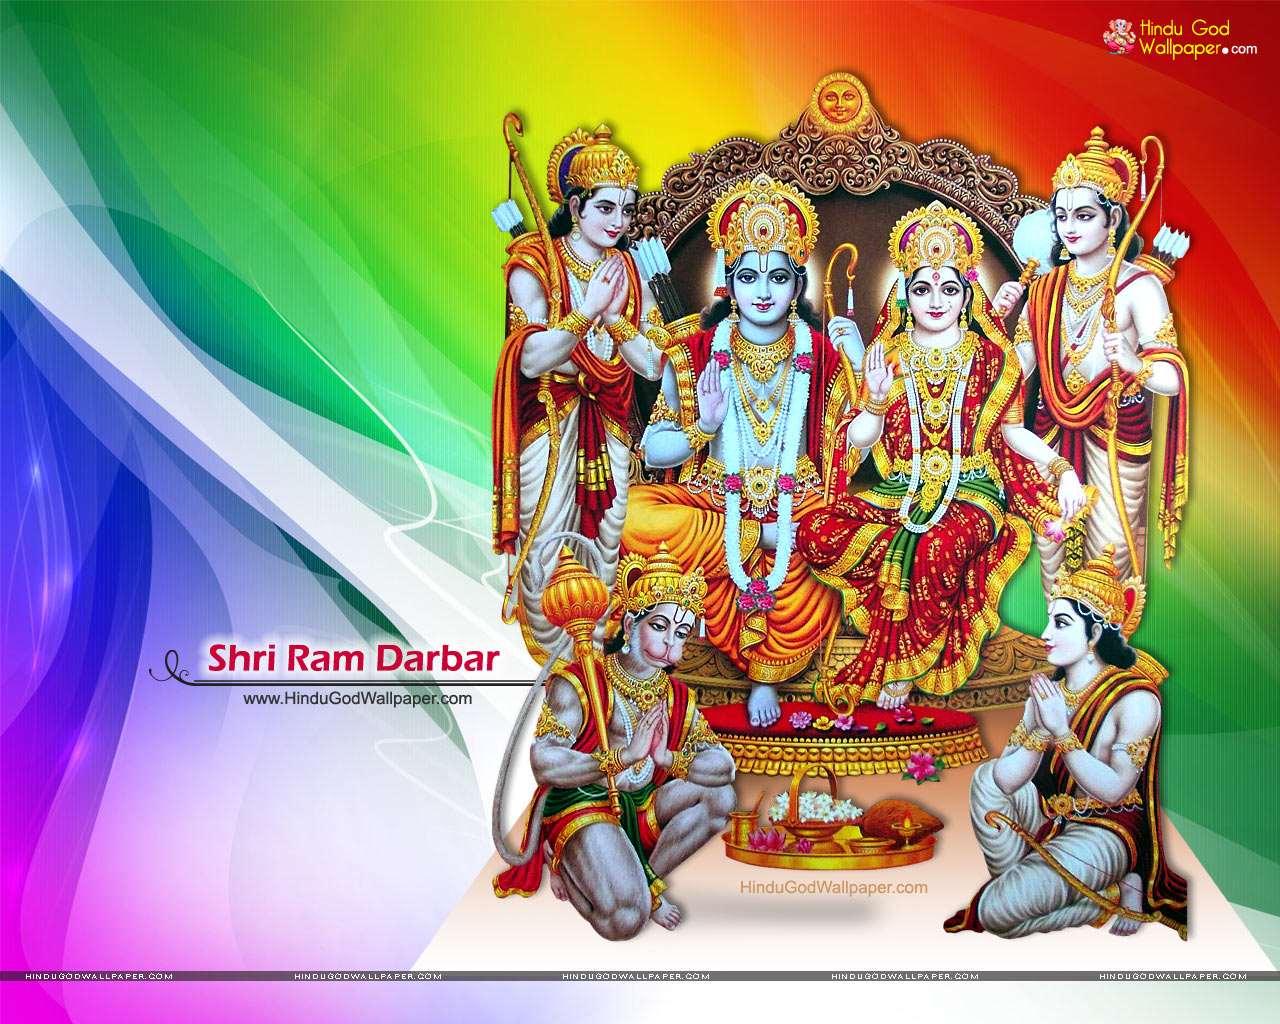 Ram Darbar Image Wallpapers